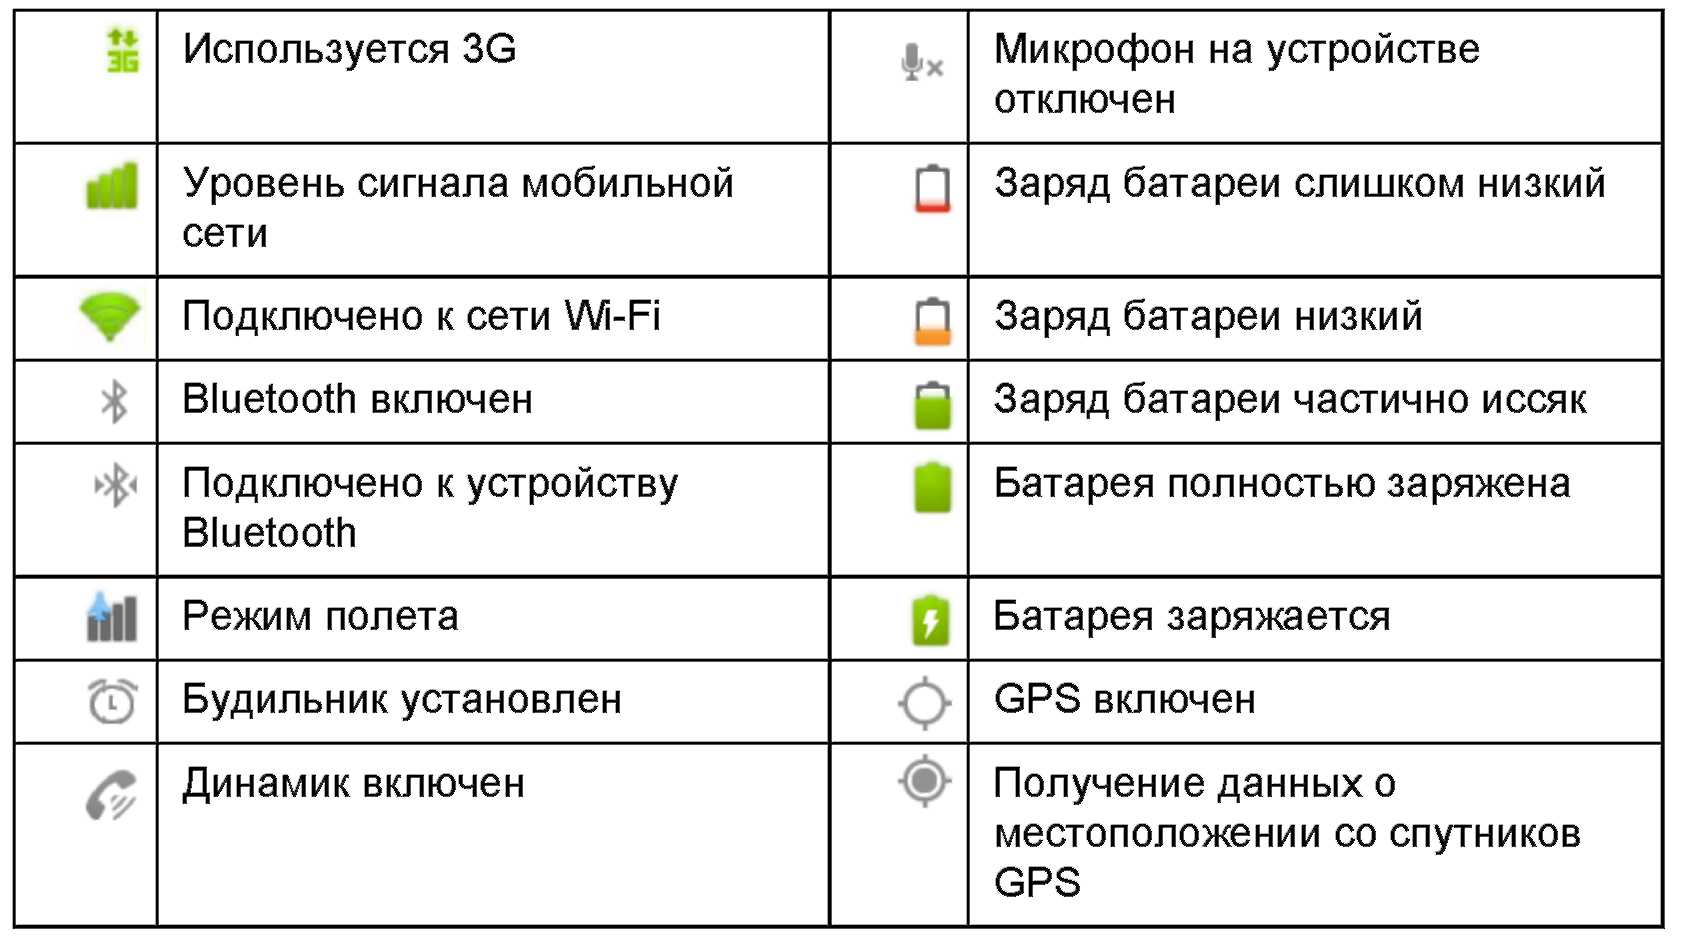 Значки на экране смартфона андроид: что они означают, виды, расшифровка на различных телефонах